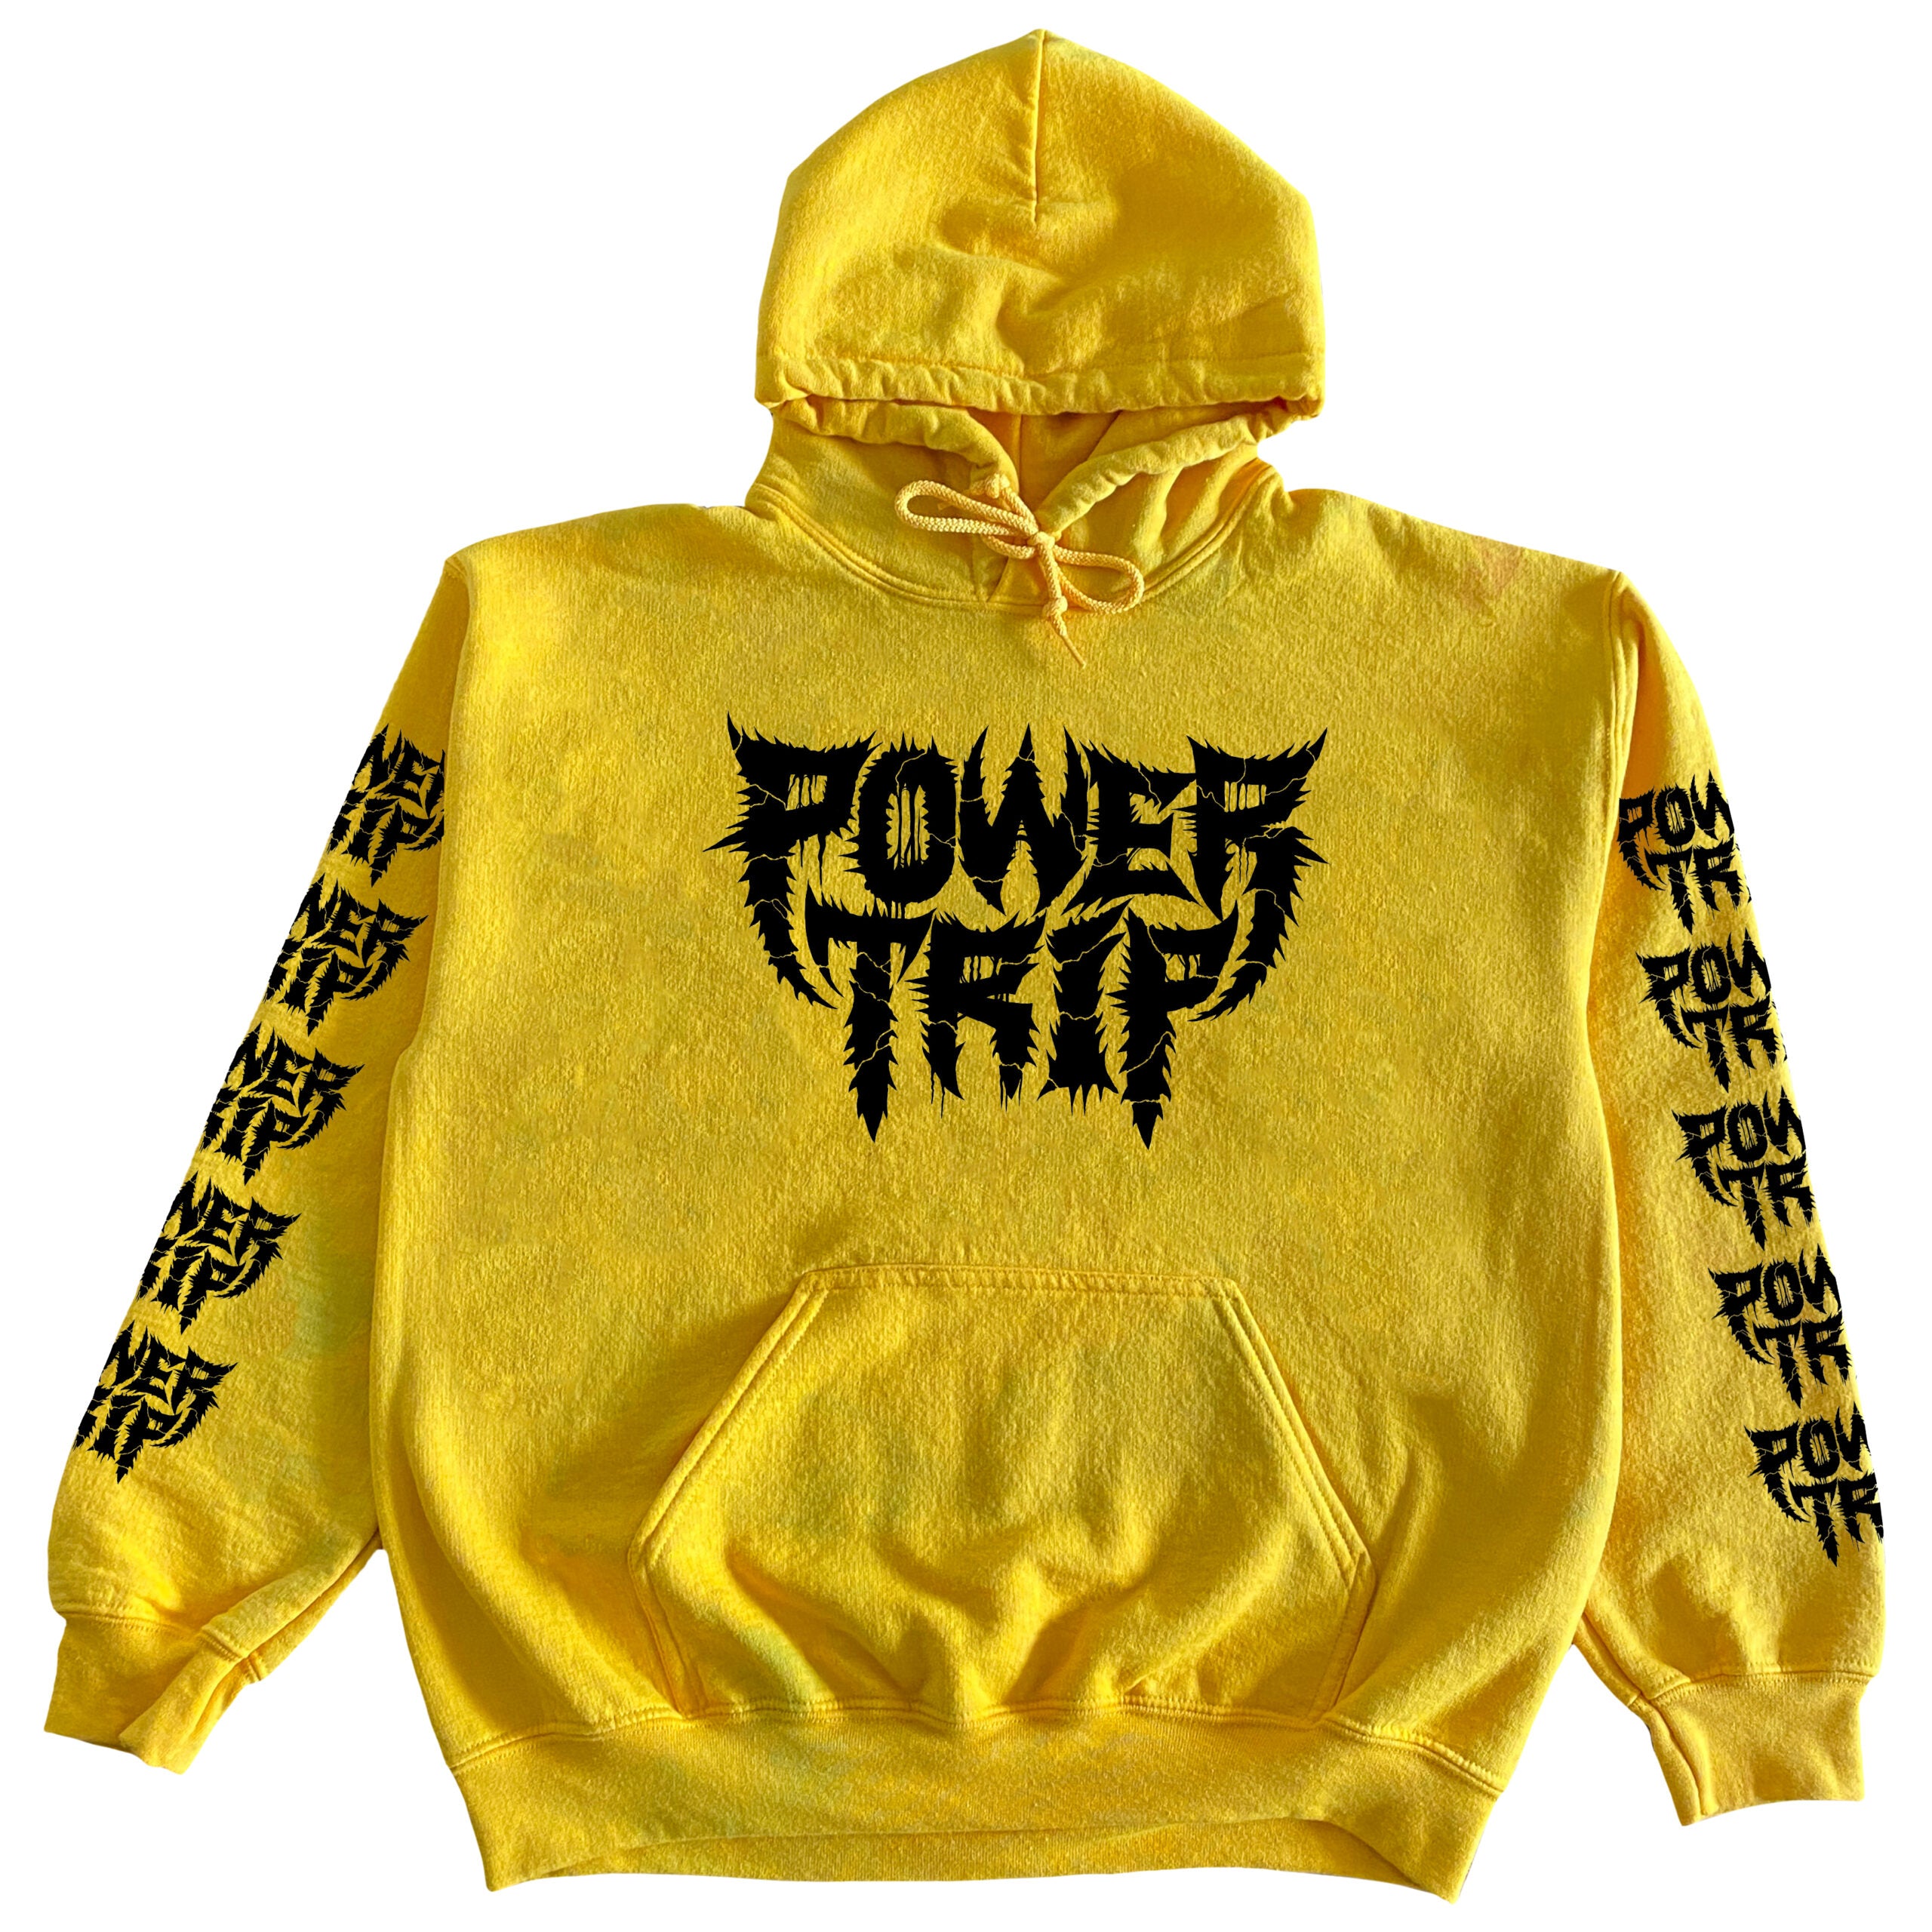 Power Trip - Golden Yellow Hoody